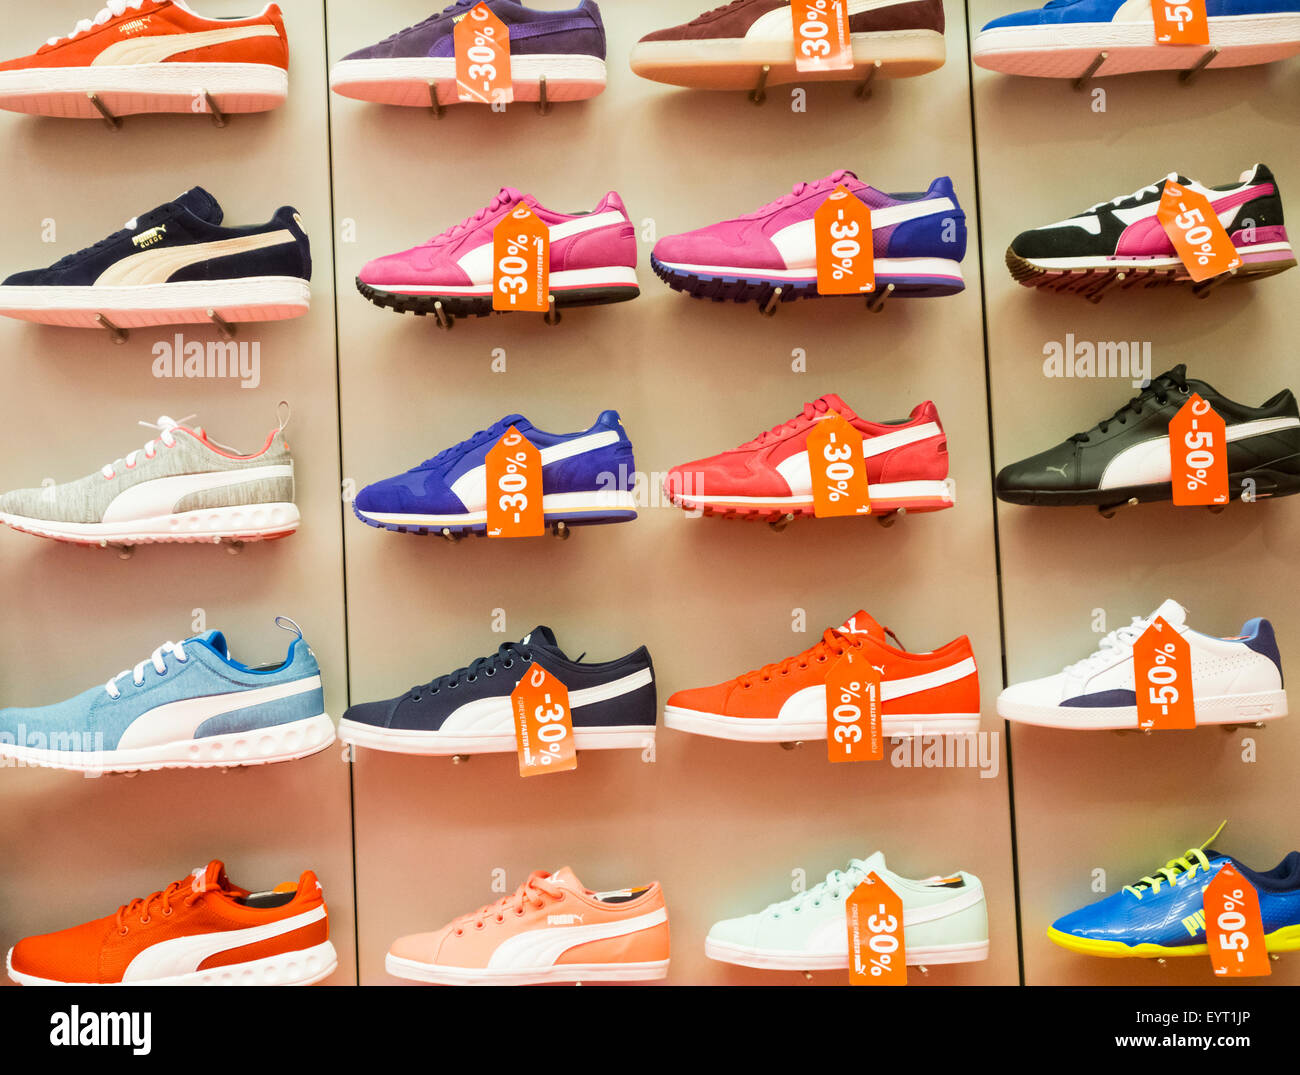 Puma scarpe da ginnastica display nel negozio di articoli sportivi. Foto Stock